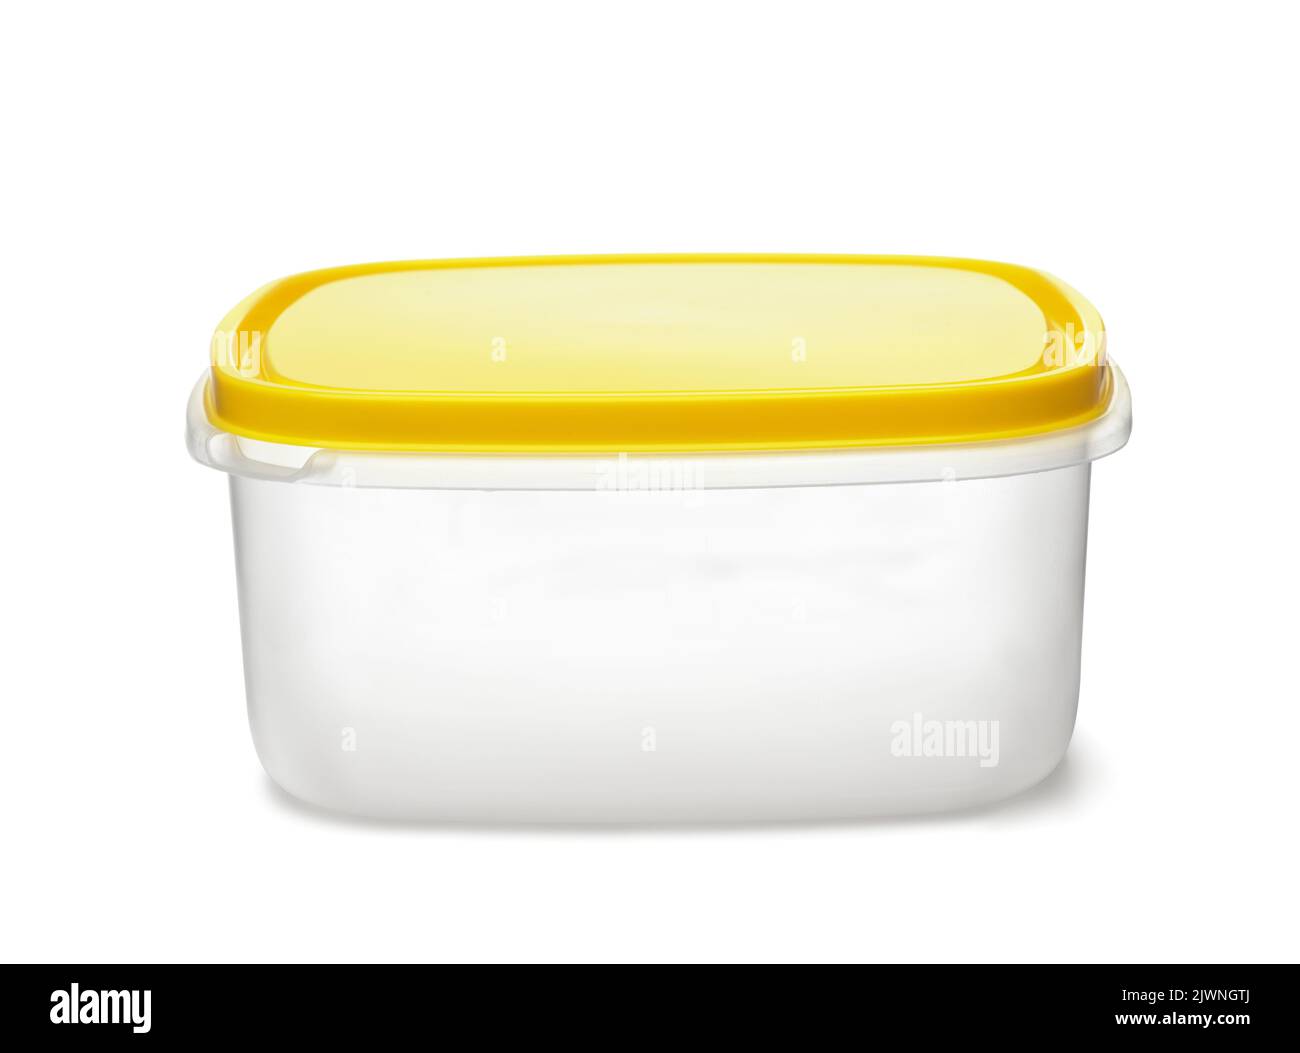 Vue avant du conteneur alimentaire en plastique de stockage réutilisable avec couvercle jaune isolé sur le blanc Banque D'Images